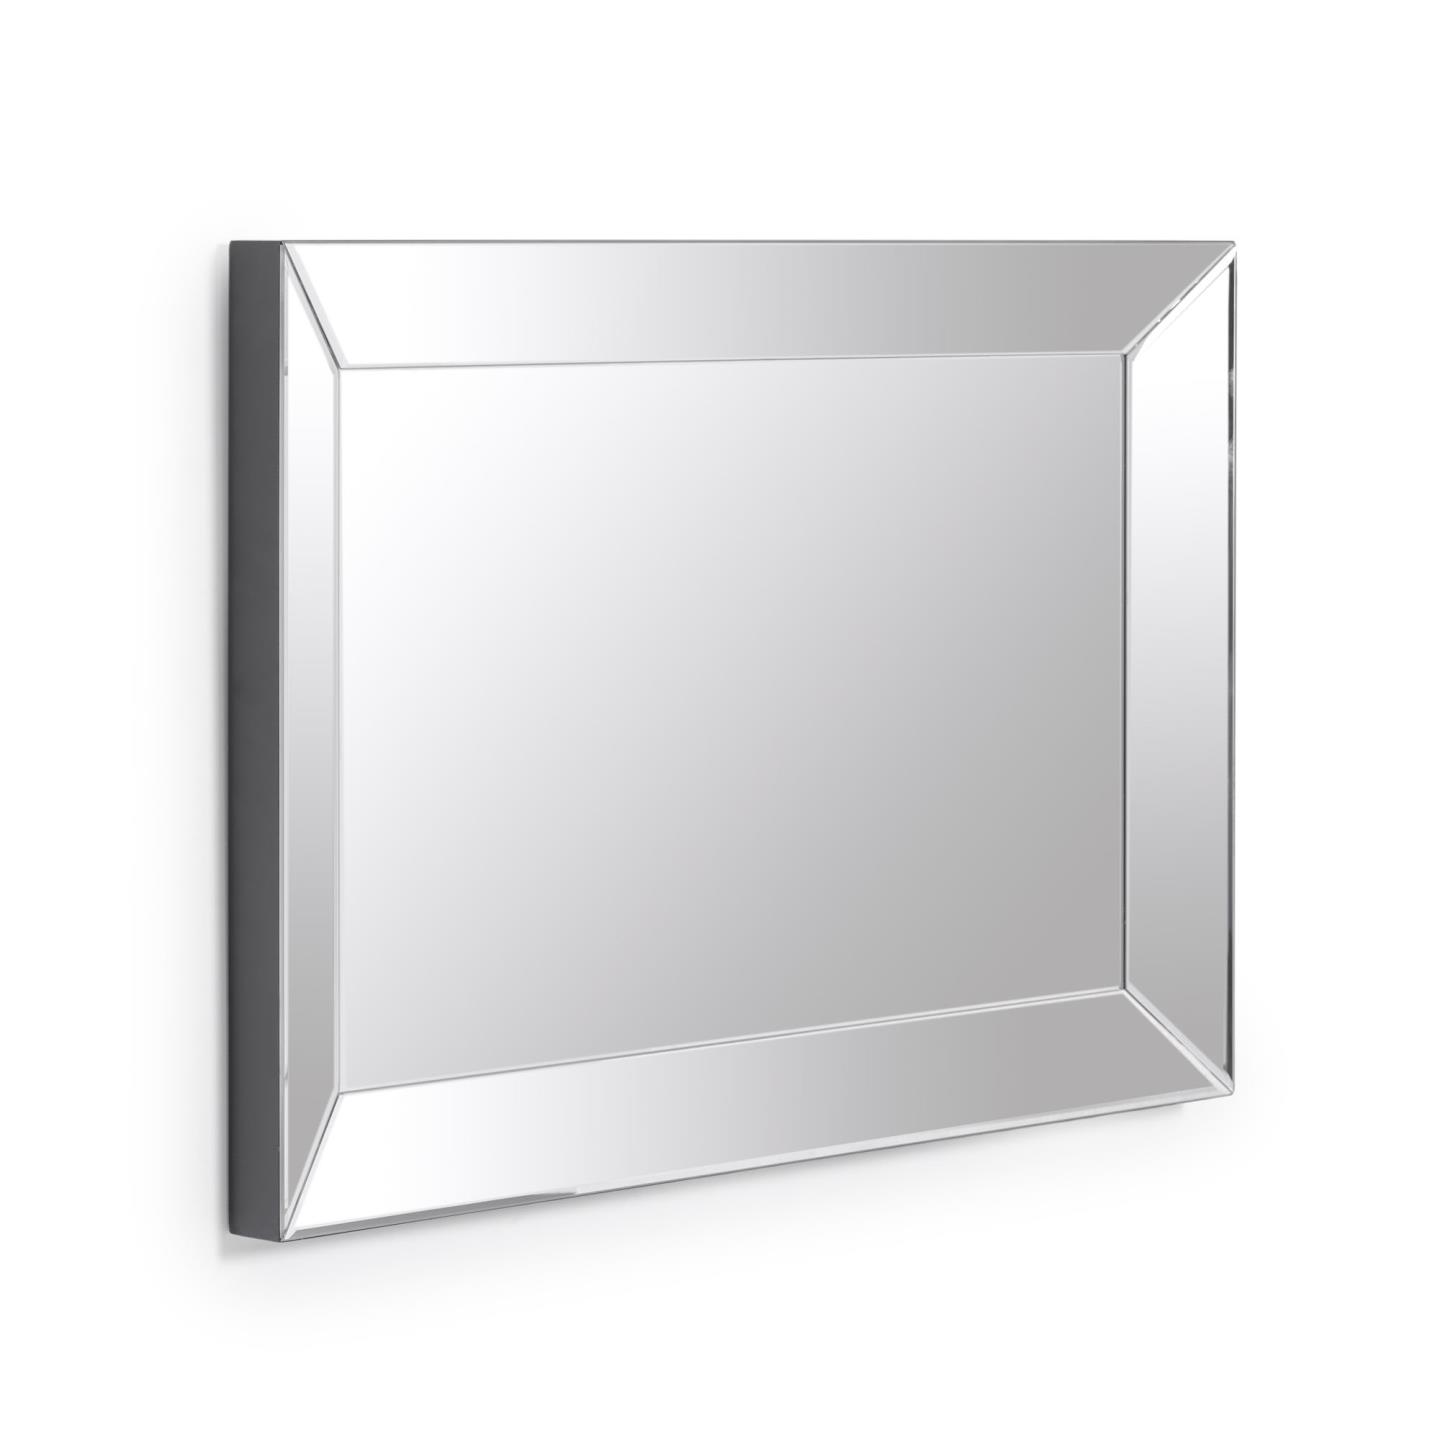 Прямоугольное зеркало Anel 2